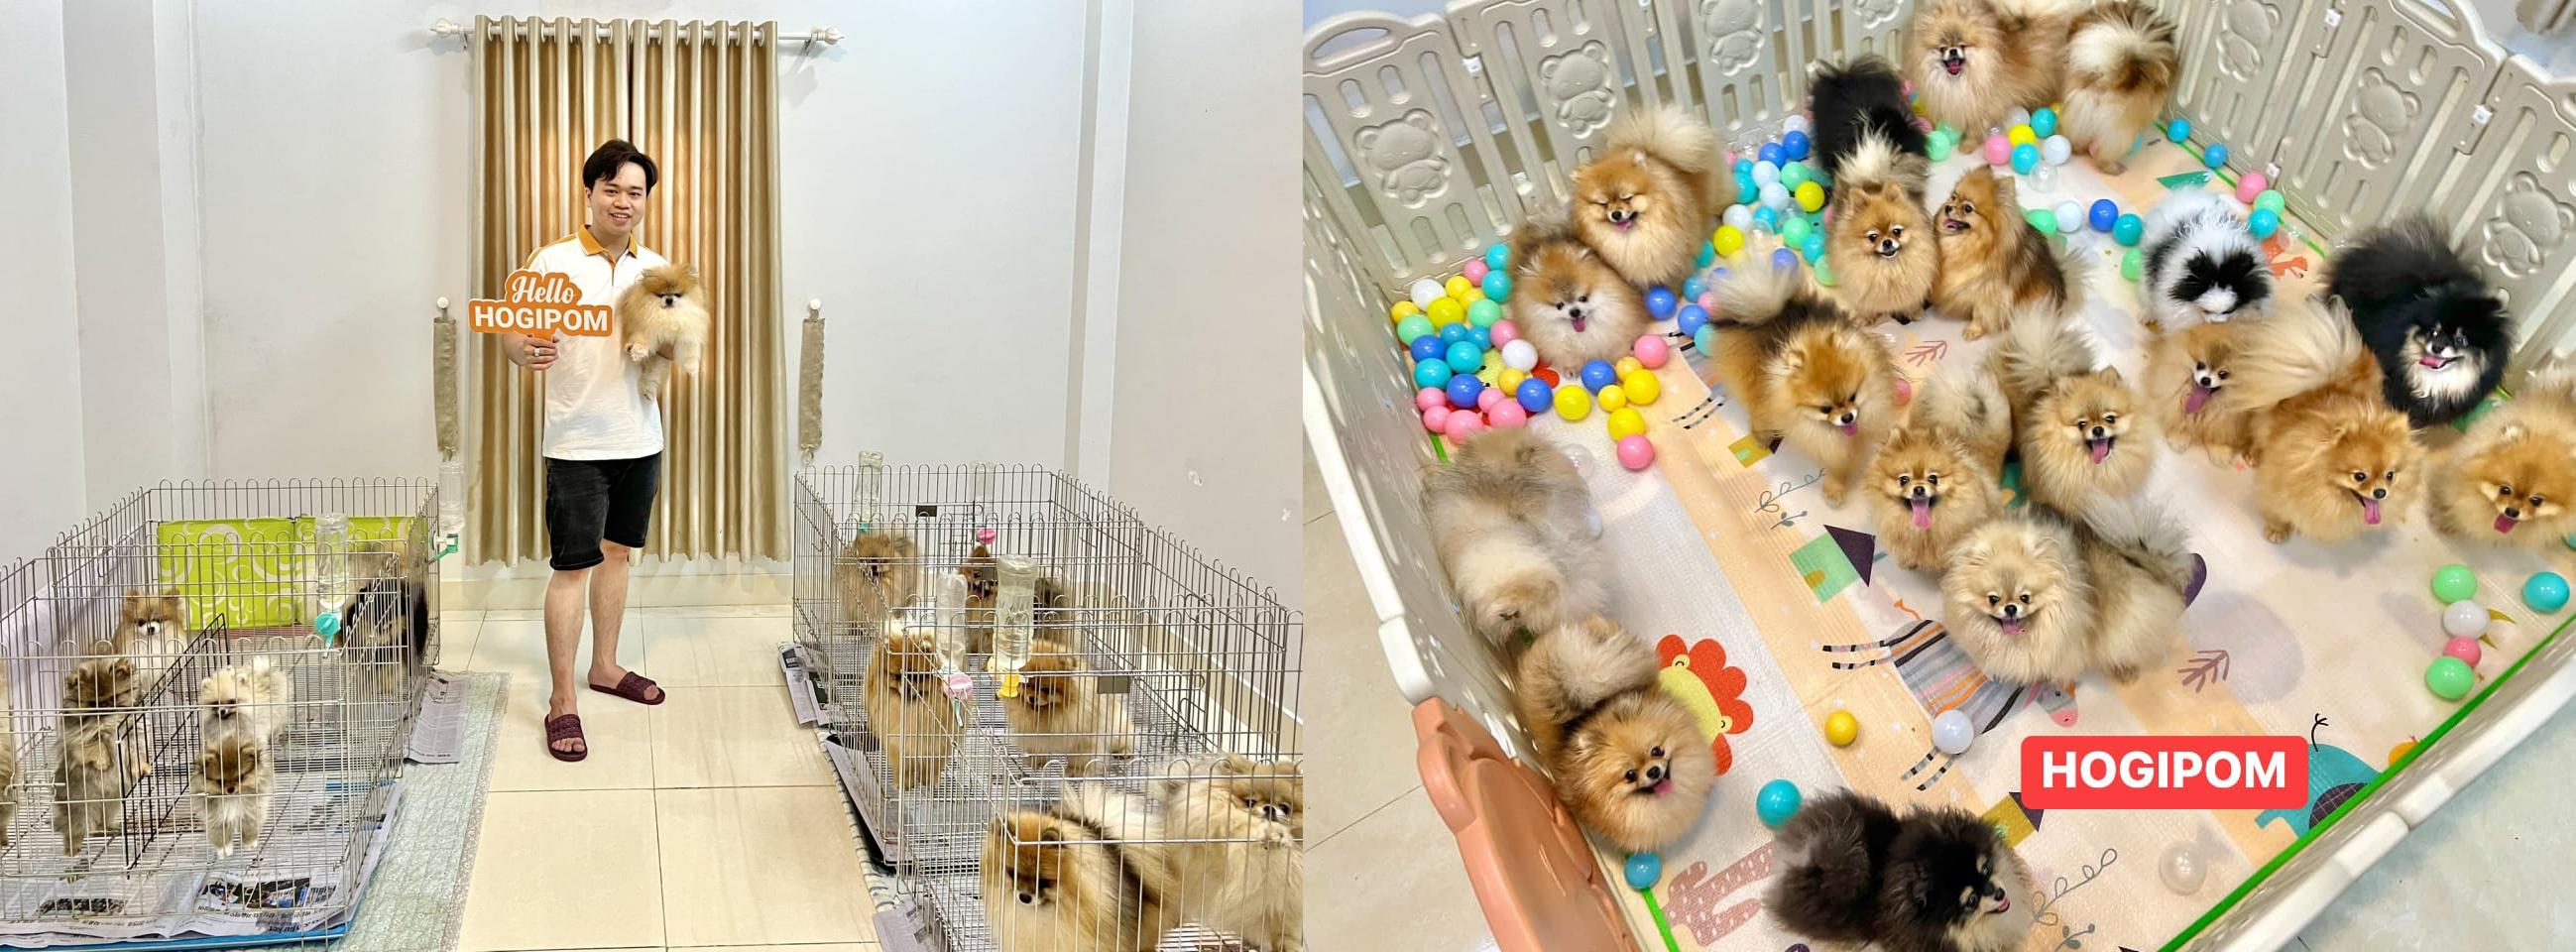 HoGi Pet Shop